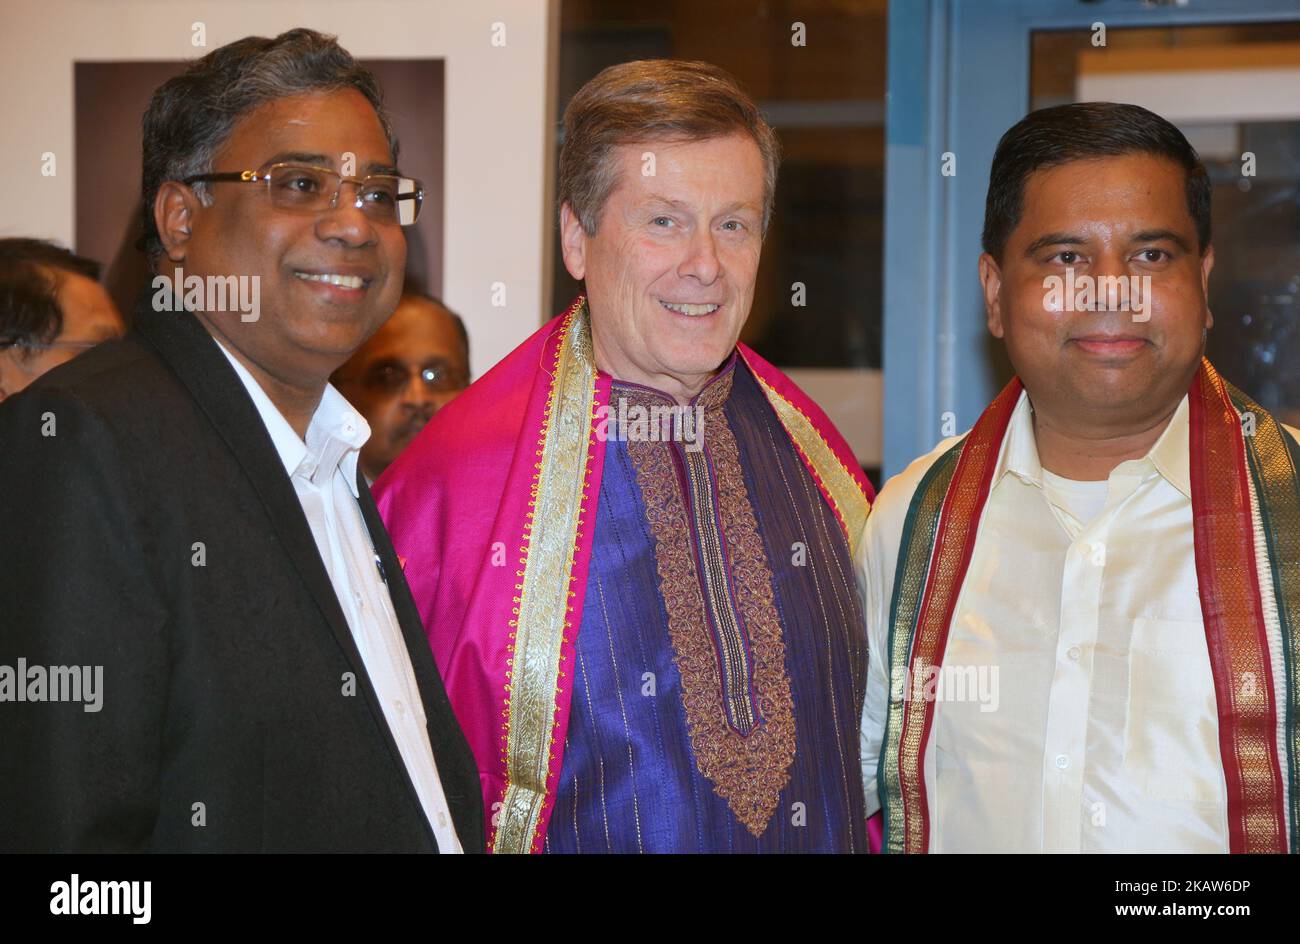 Der Bürgermeister von Toronto, John Tory (Mitte), und der Abgeordnete Gary Anandasangaree (rechts) nehmen am Empfang des Federal Liberal Caucus Thai Pongal and Tamil Heritage Month in Scarborough, Ontario, Kanada, am 16. Januar 2018 Teil. Das kanadische Parlament hat den Monat Januar 2016 offiziell zum tamilischen Kulturmonat erklärt. Kanada ist die Heimat einer der größten tamilischen Diasporas der Welt, und es wird geschätzt, dass über 300.000 Tamilen Kanada als Heimat bezeichnen. (Foto von Creative Touch Imaging Ltd./NurPhoto) Stockfoto